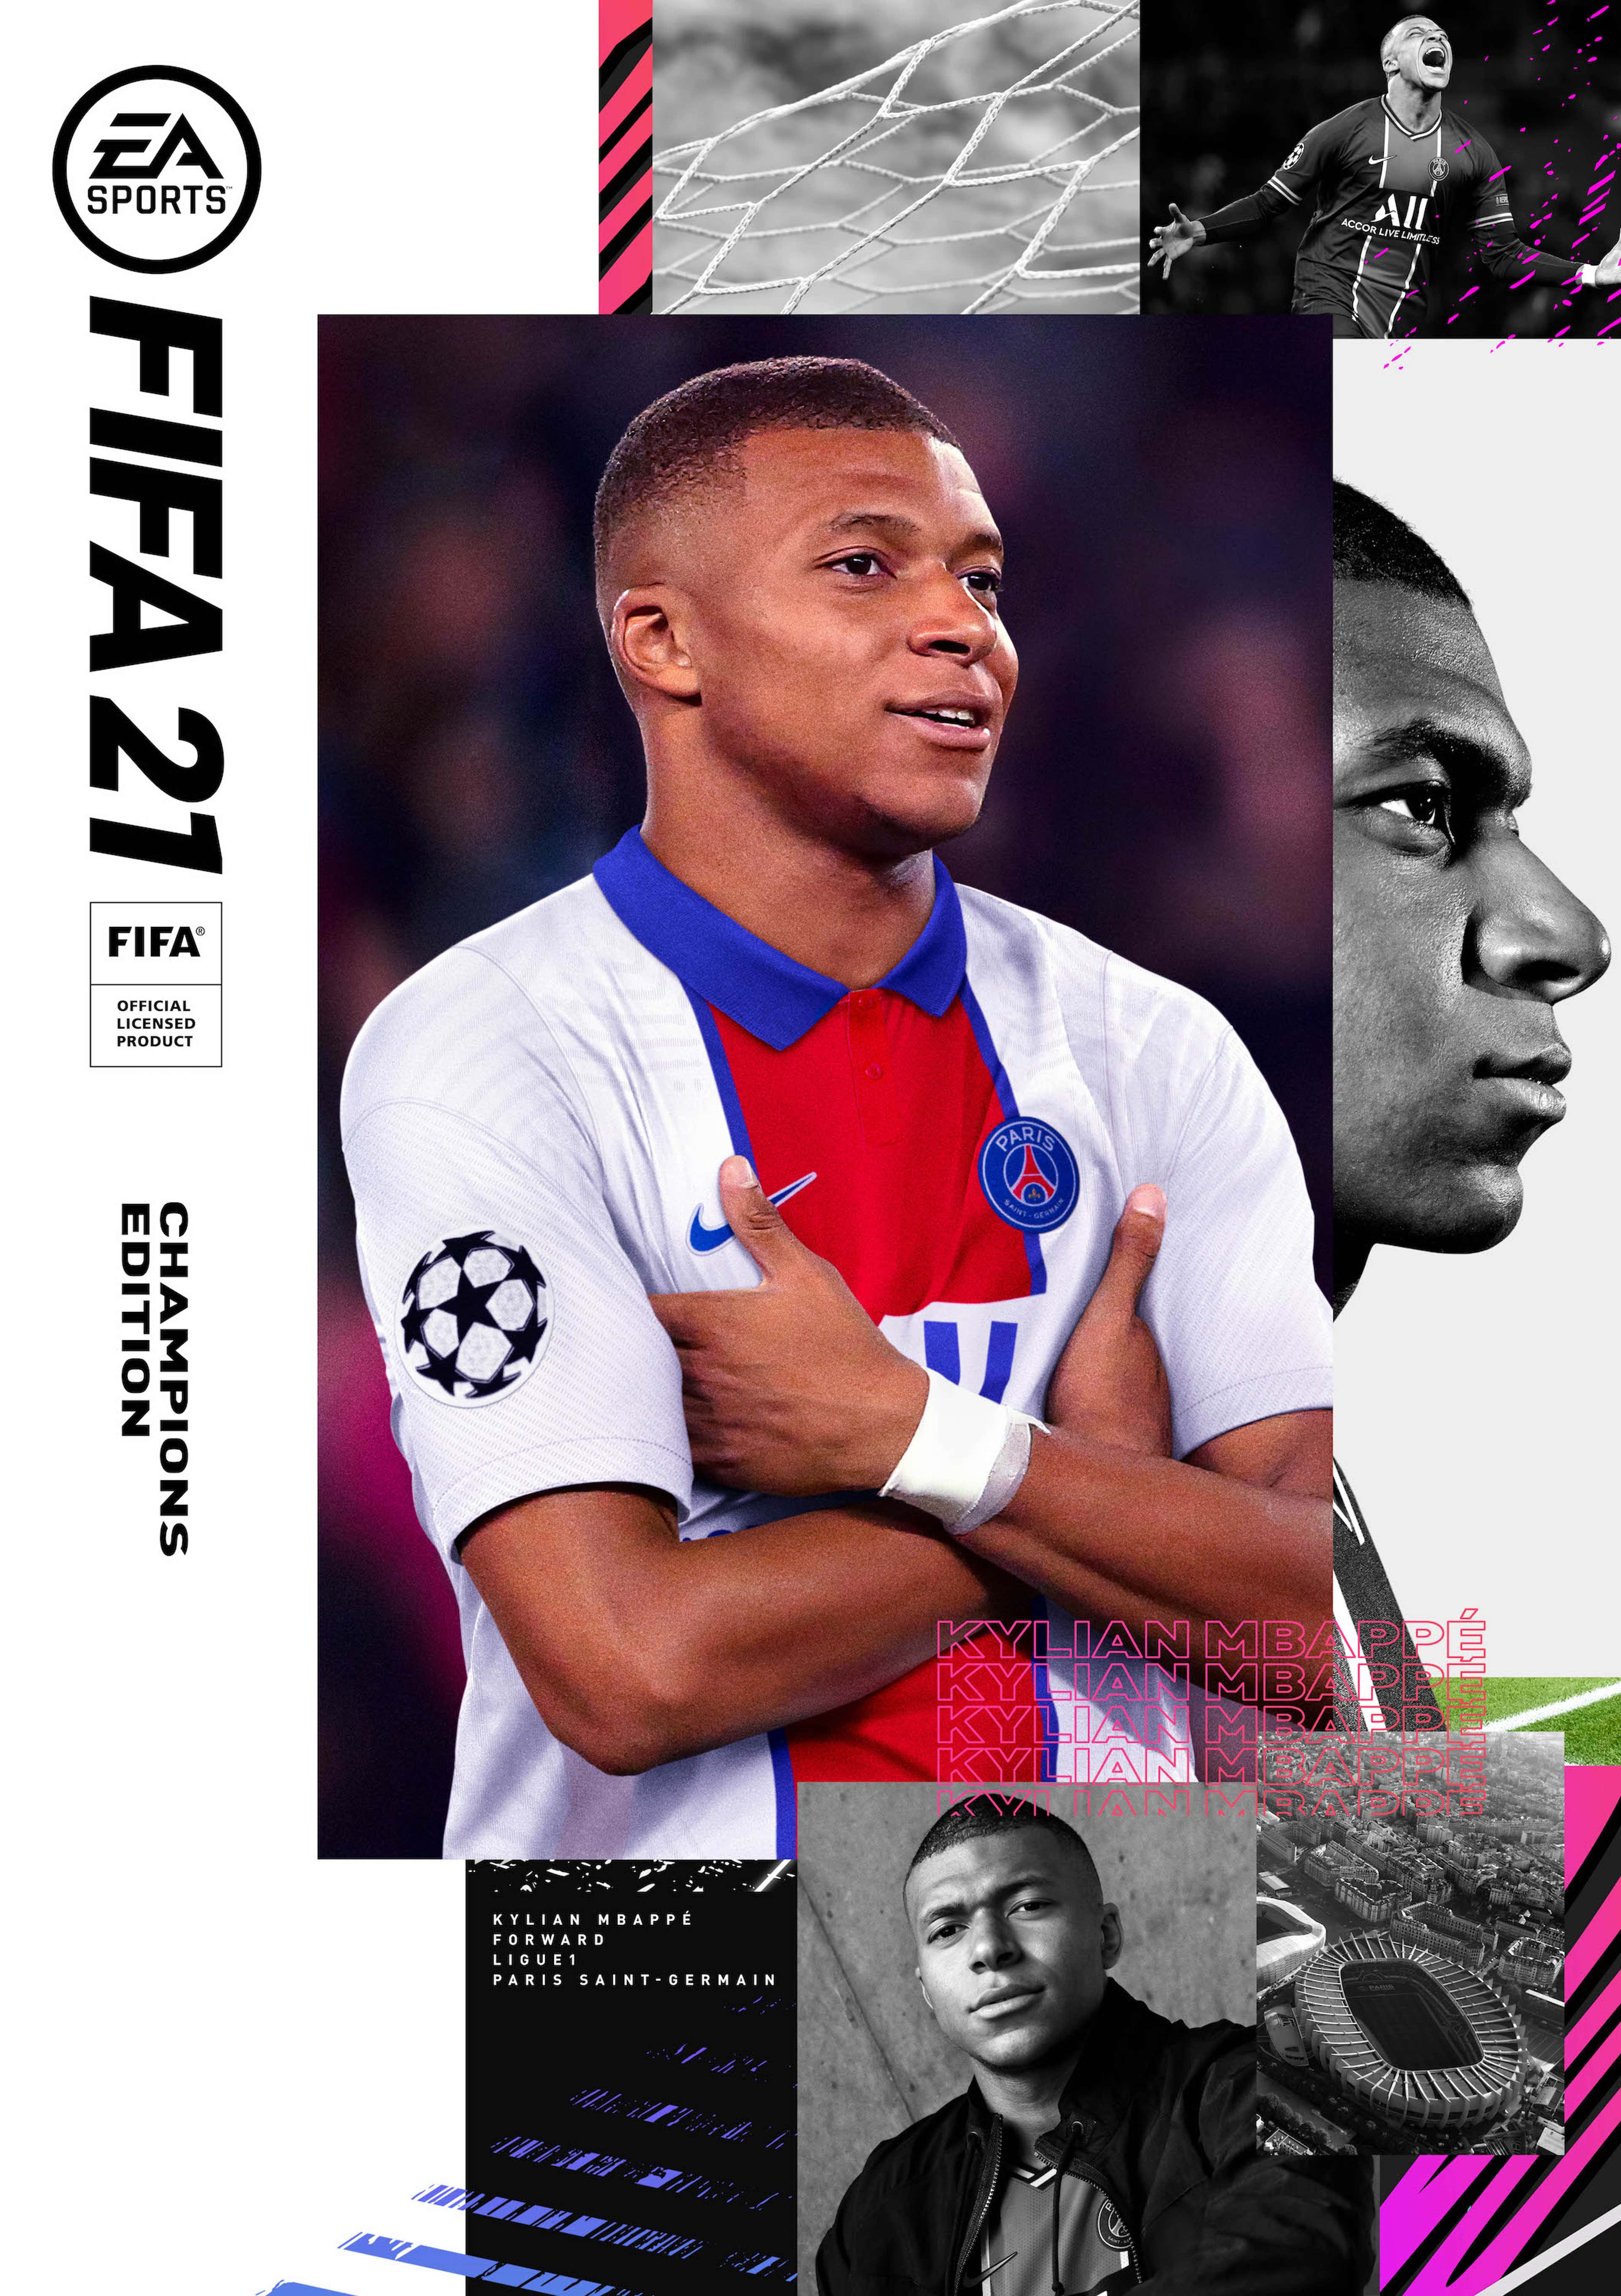 Guia da Ligue 1 para FIFA 21 Ultimate Team